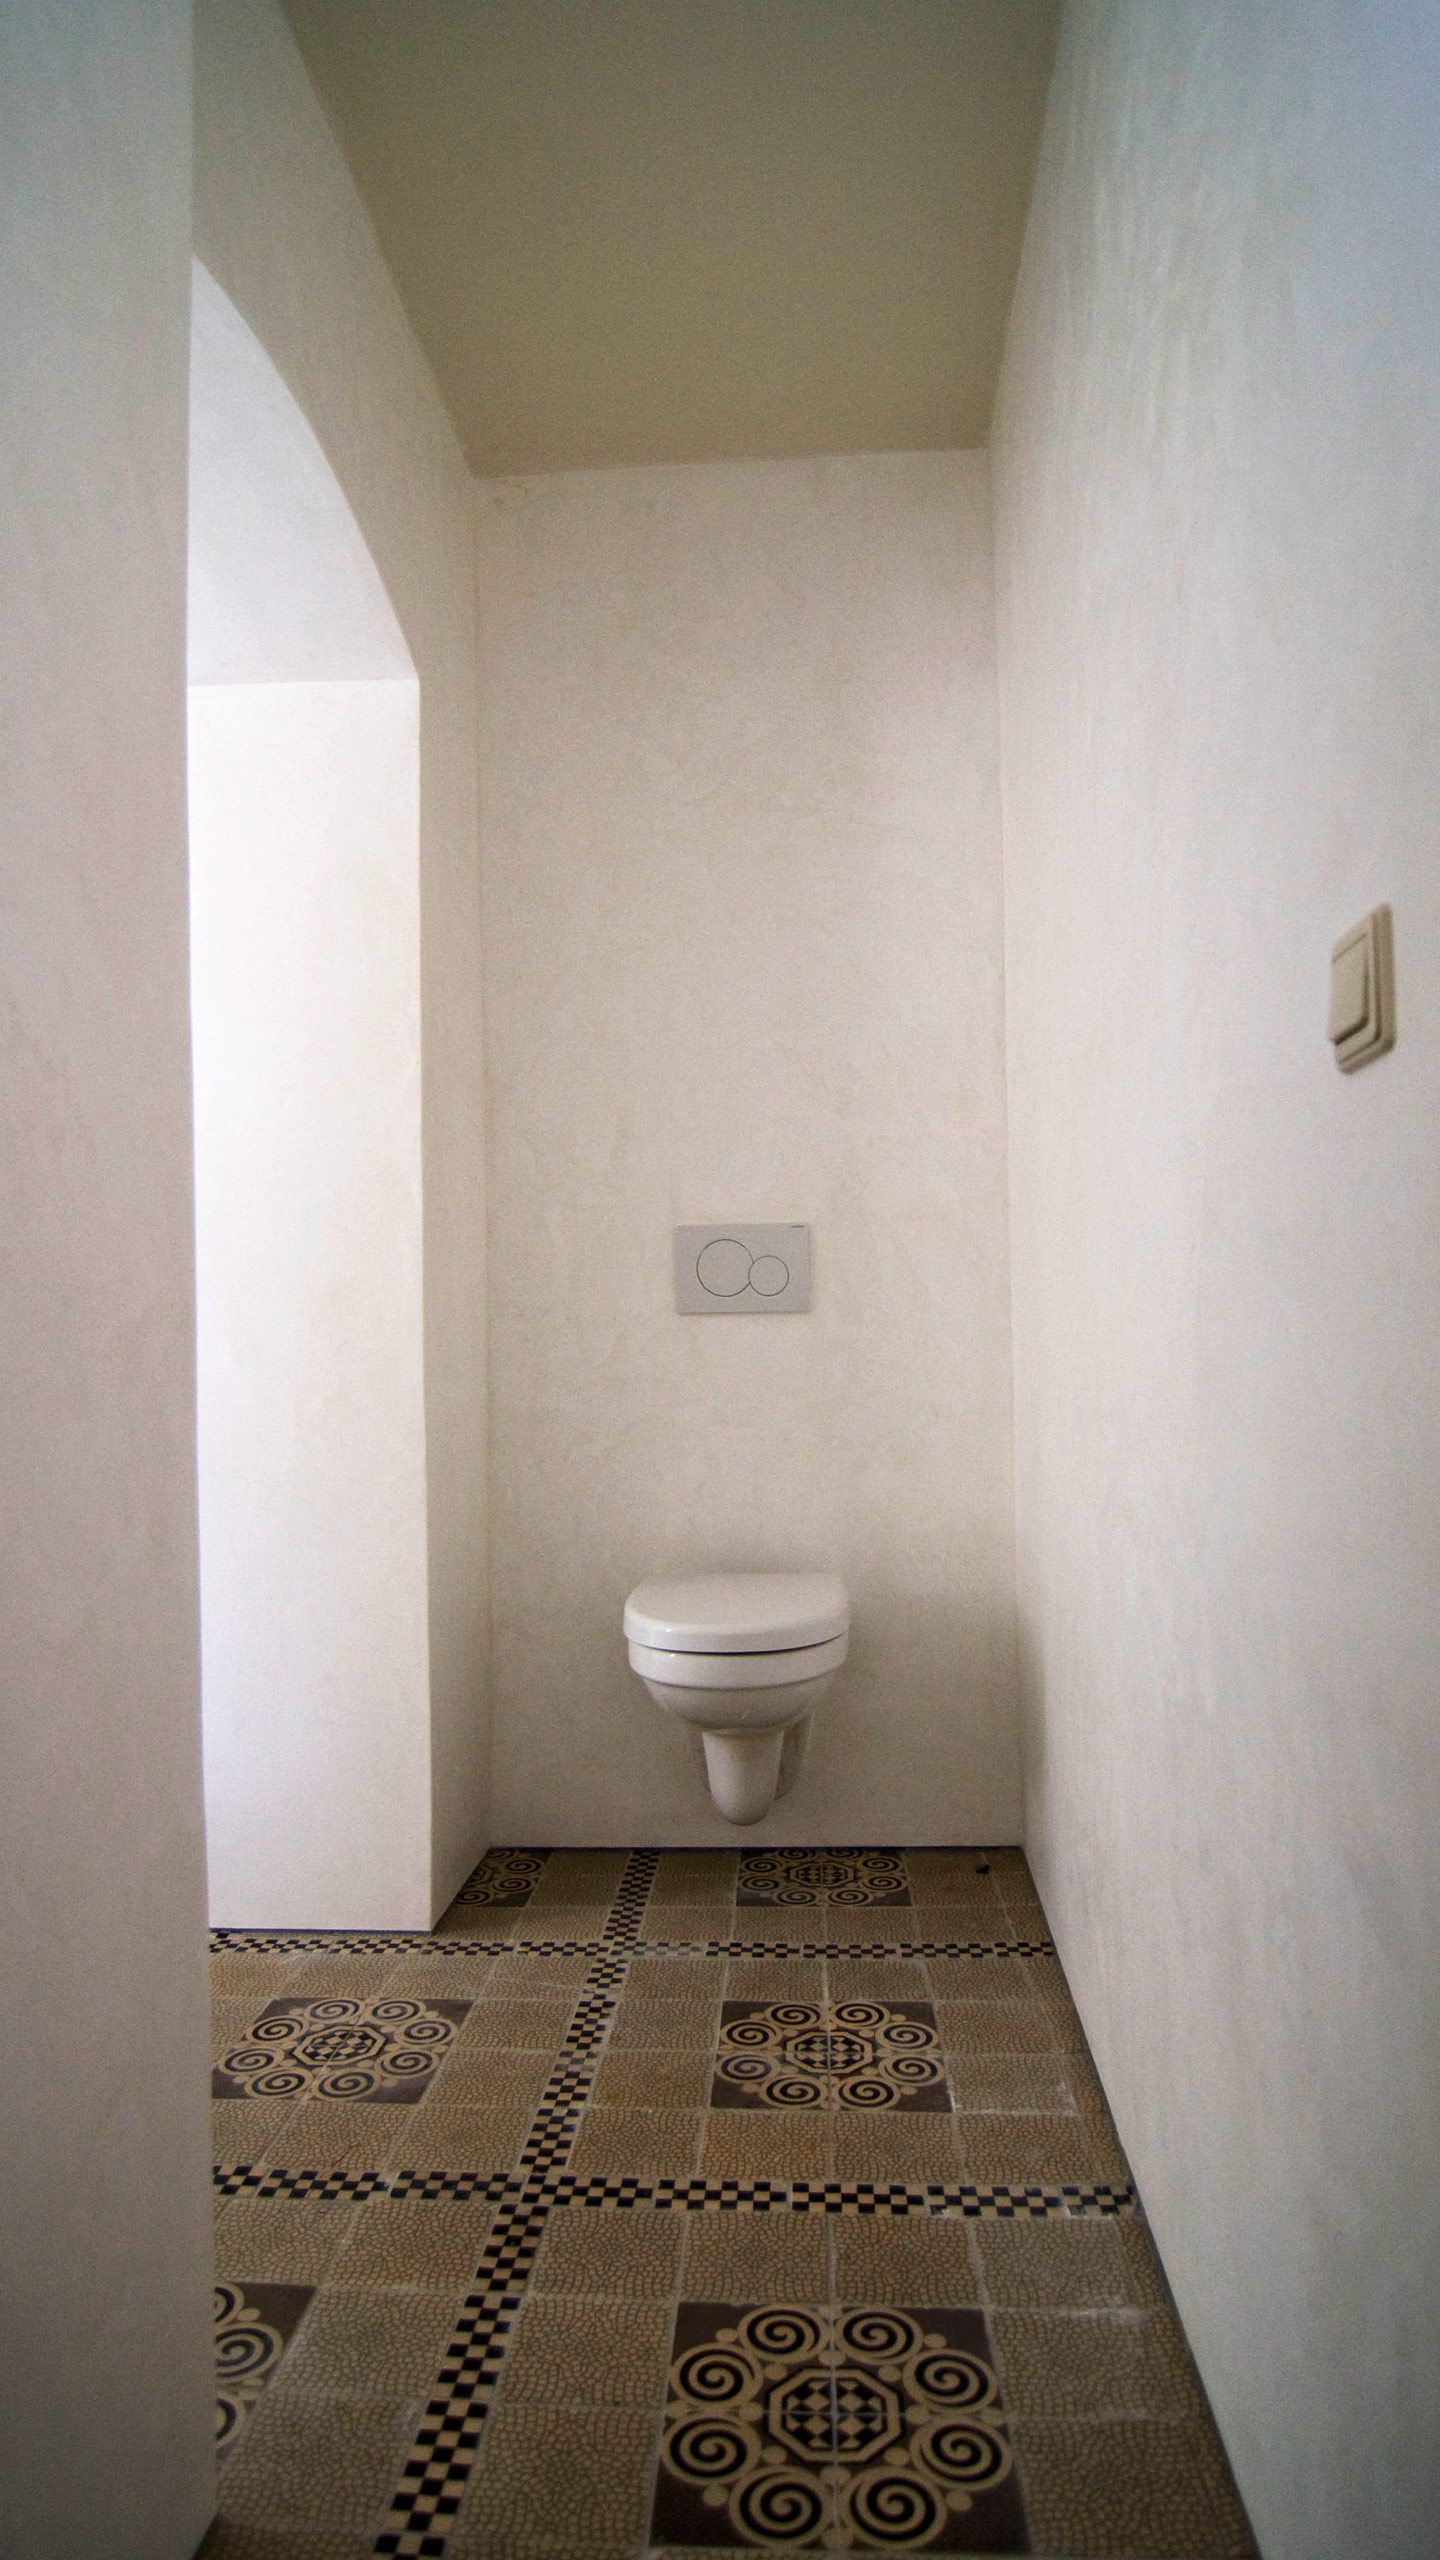 Waterdicht Stucwerk - Luxueuze badkamer, Contrast, ruimte en licht